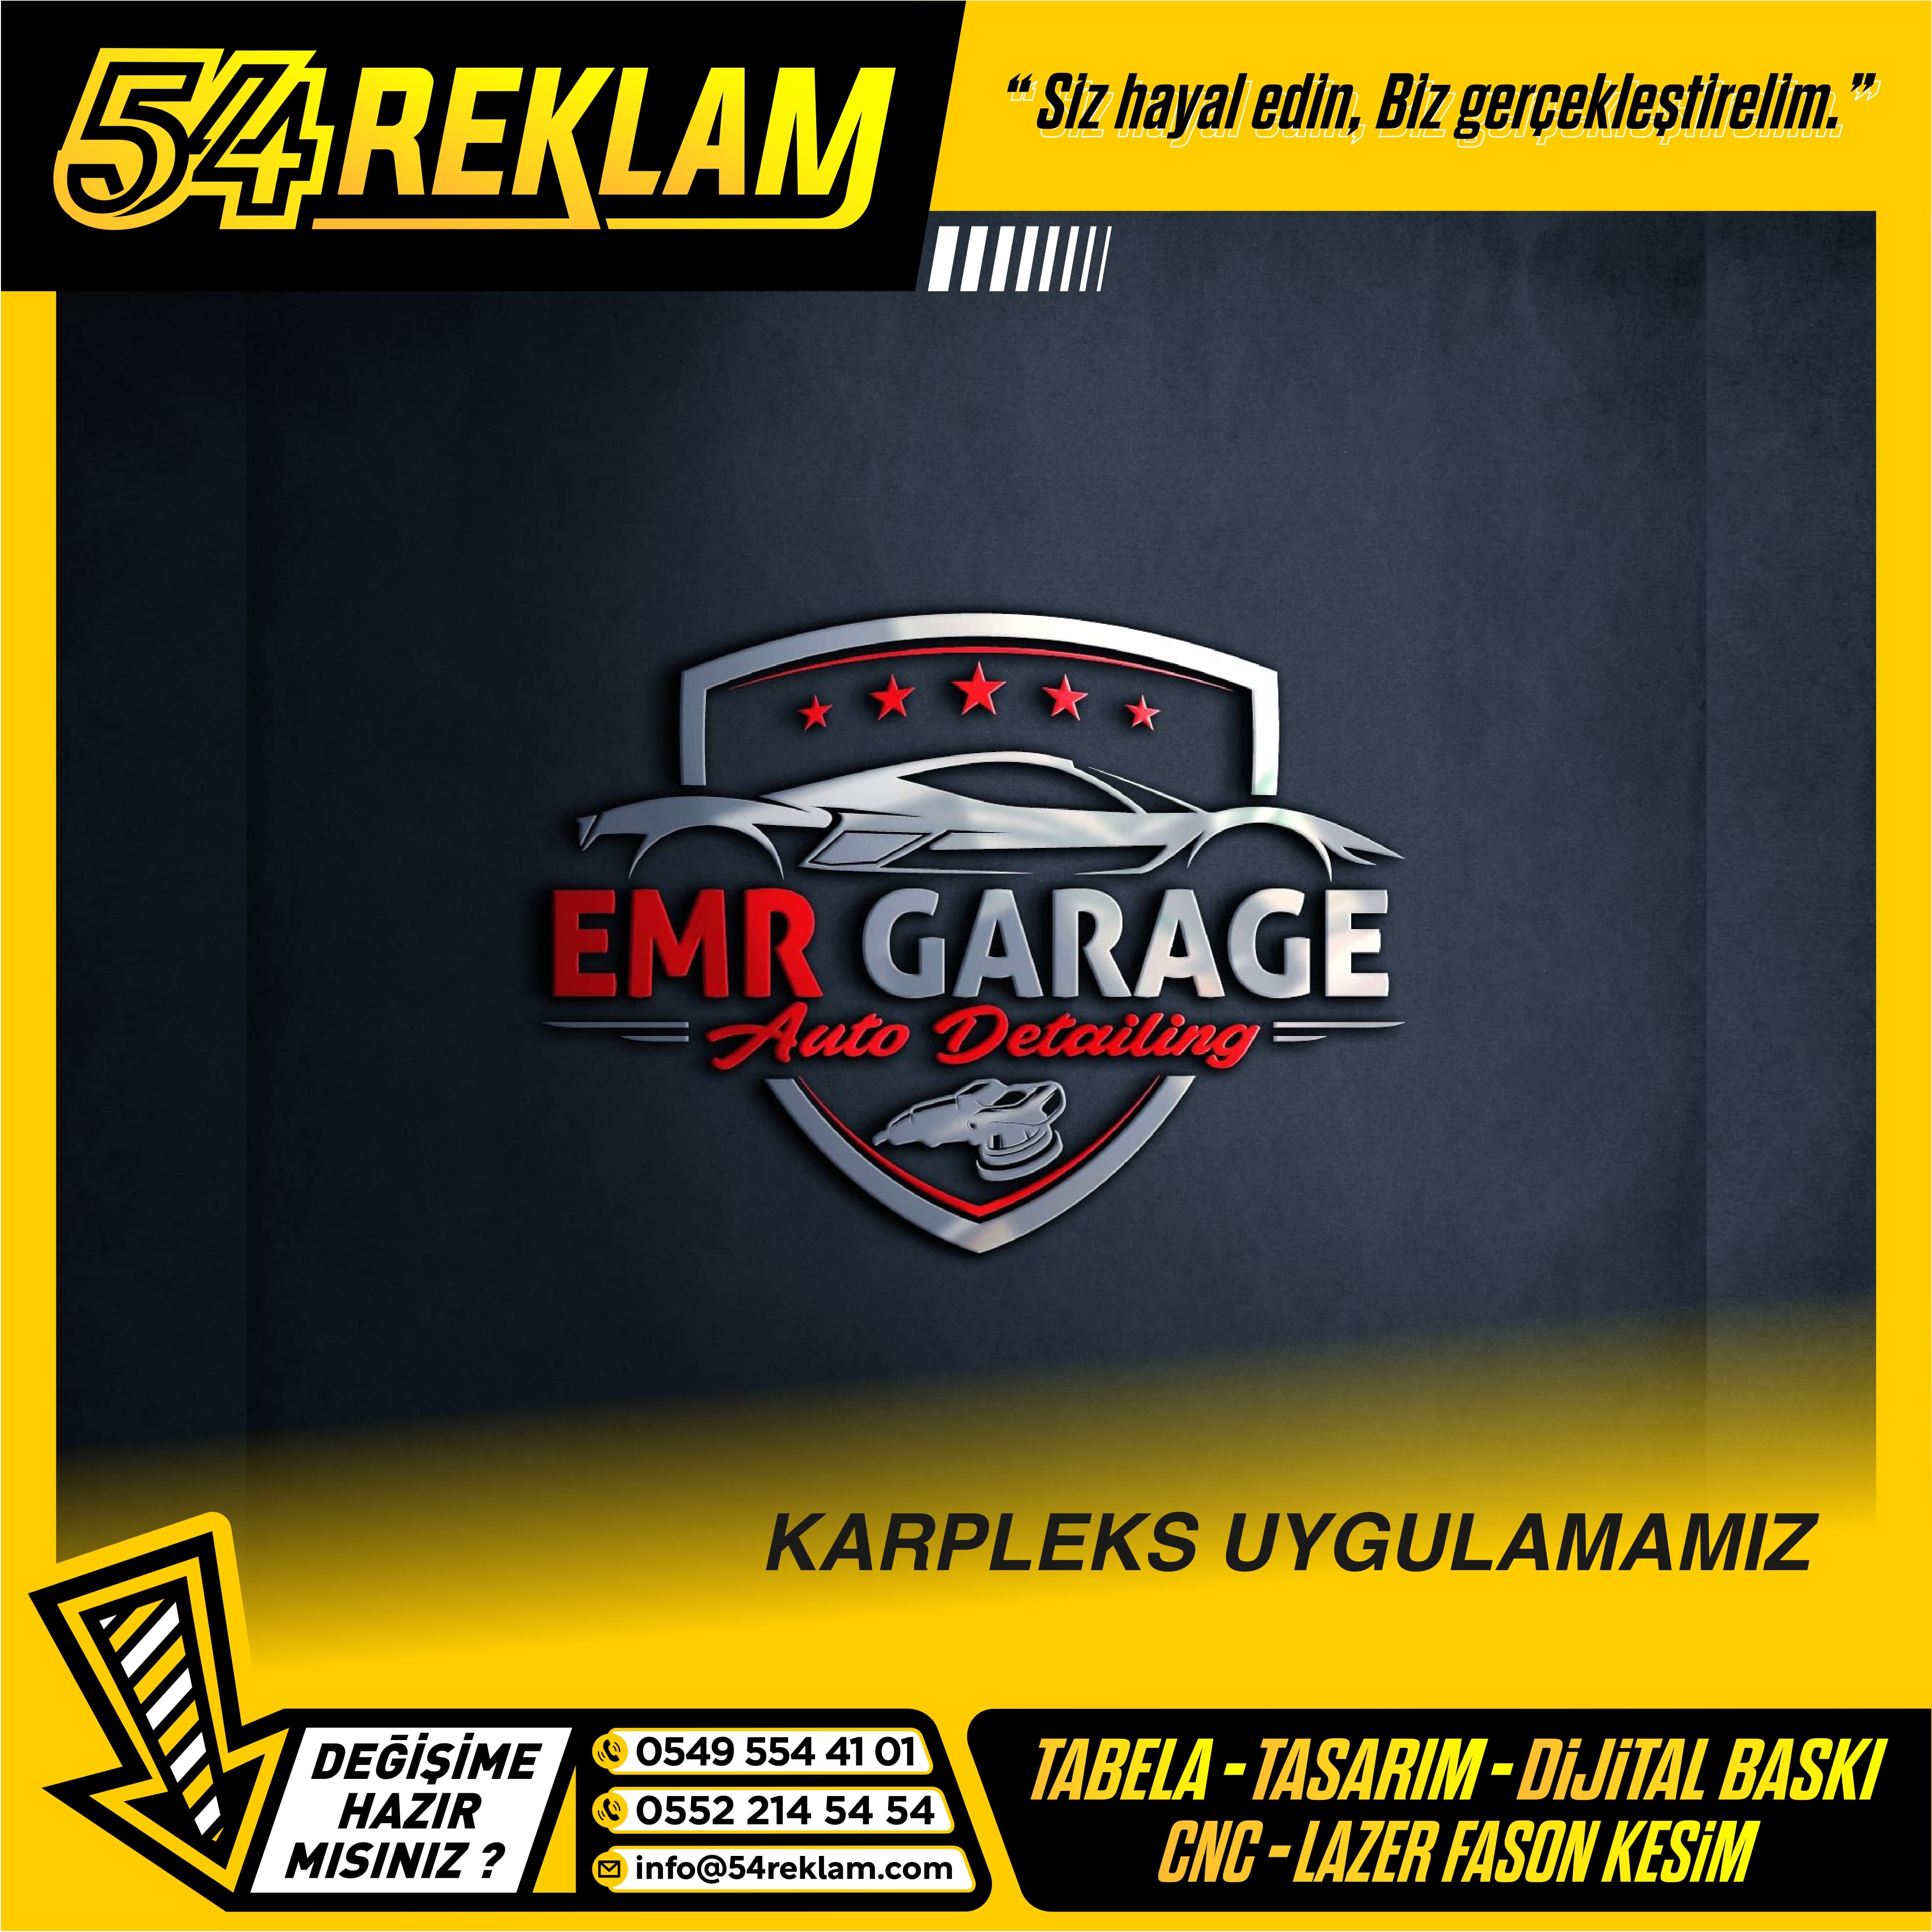 EMR Garage Karpleks Uygulamamız